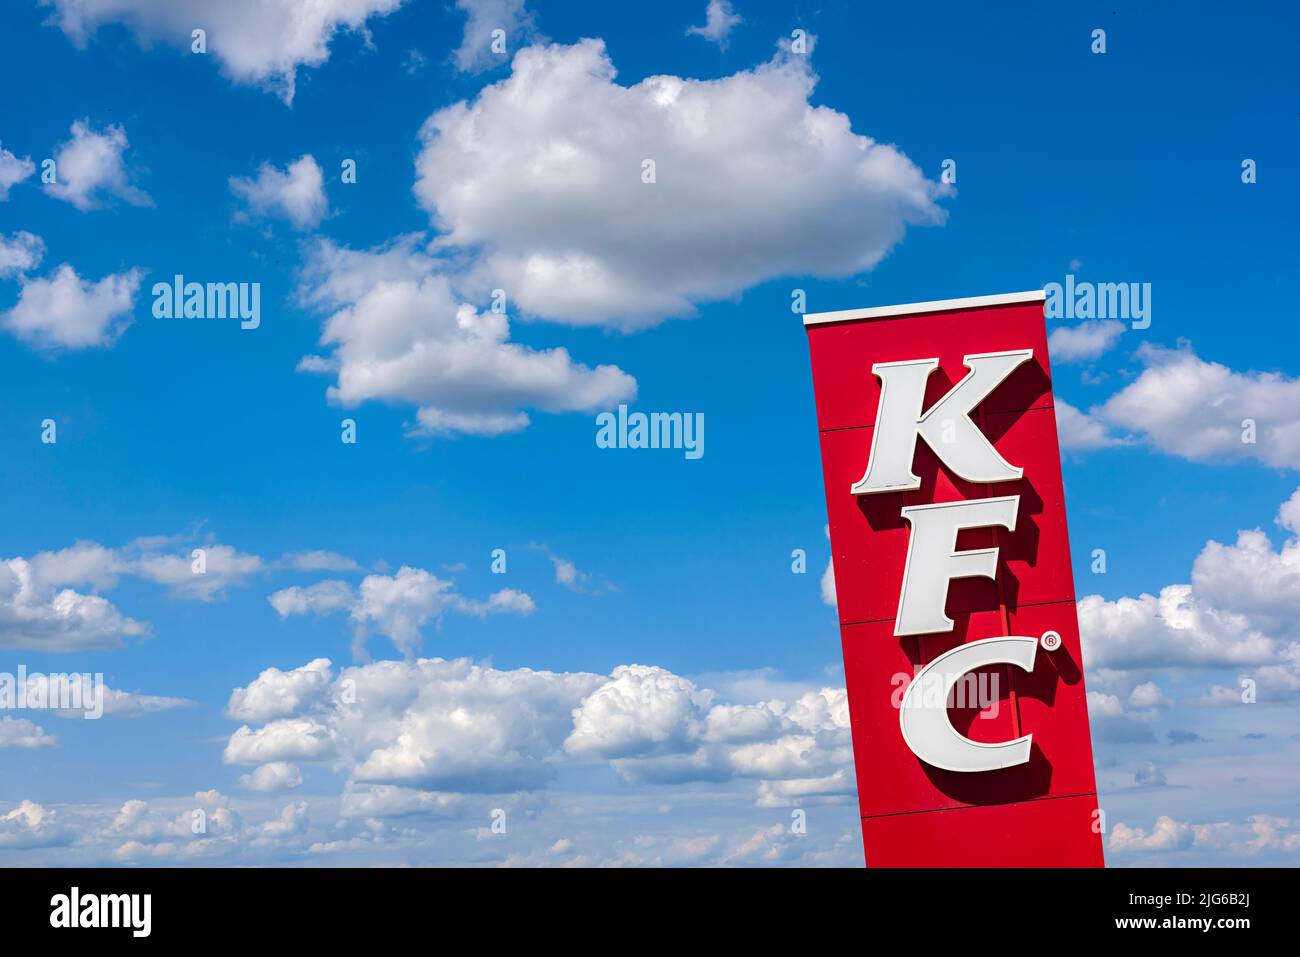 Werbeschild der Restaurantkette KFC Stock Photo